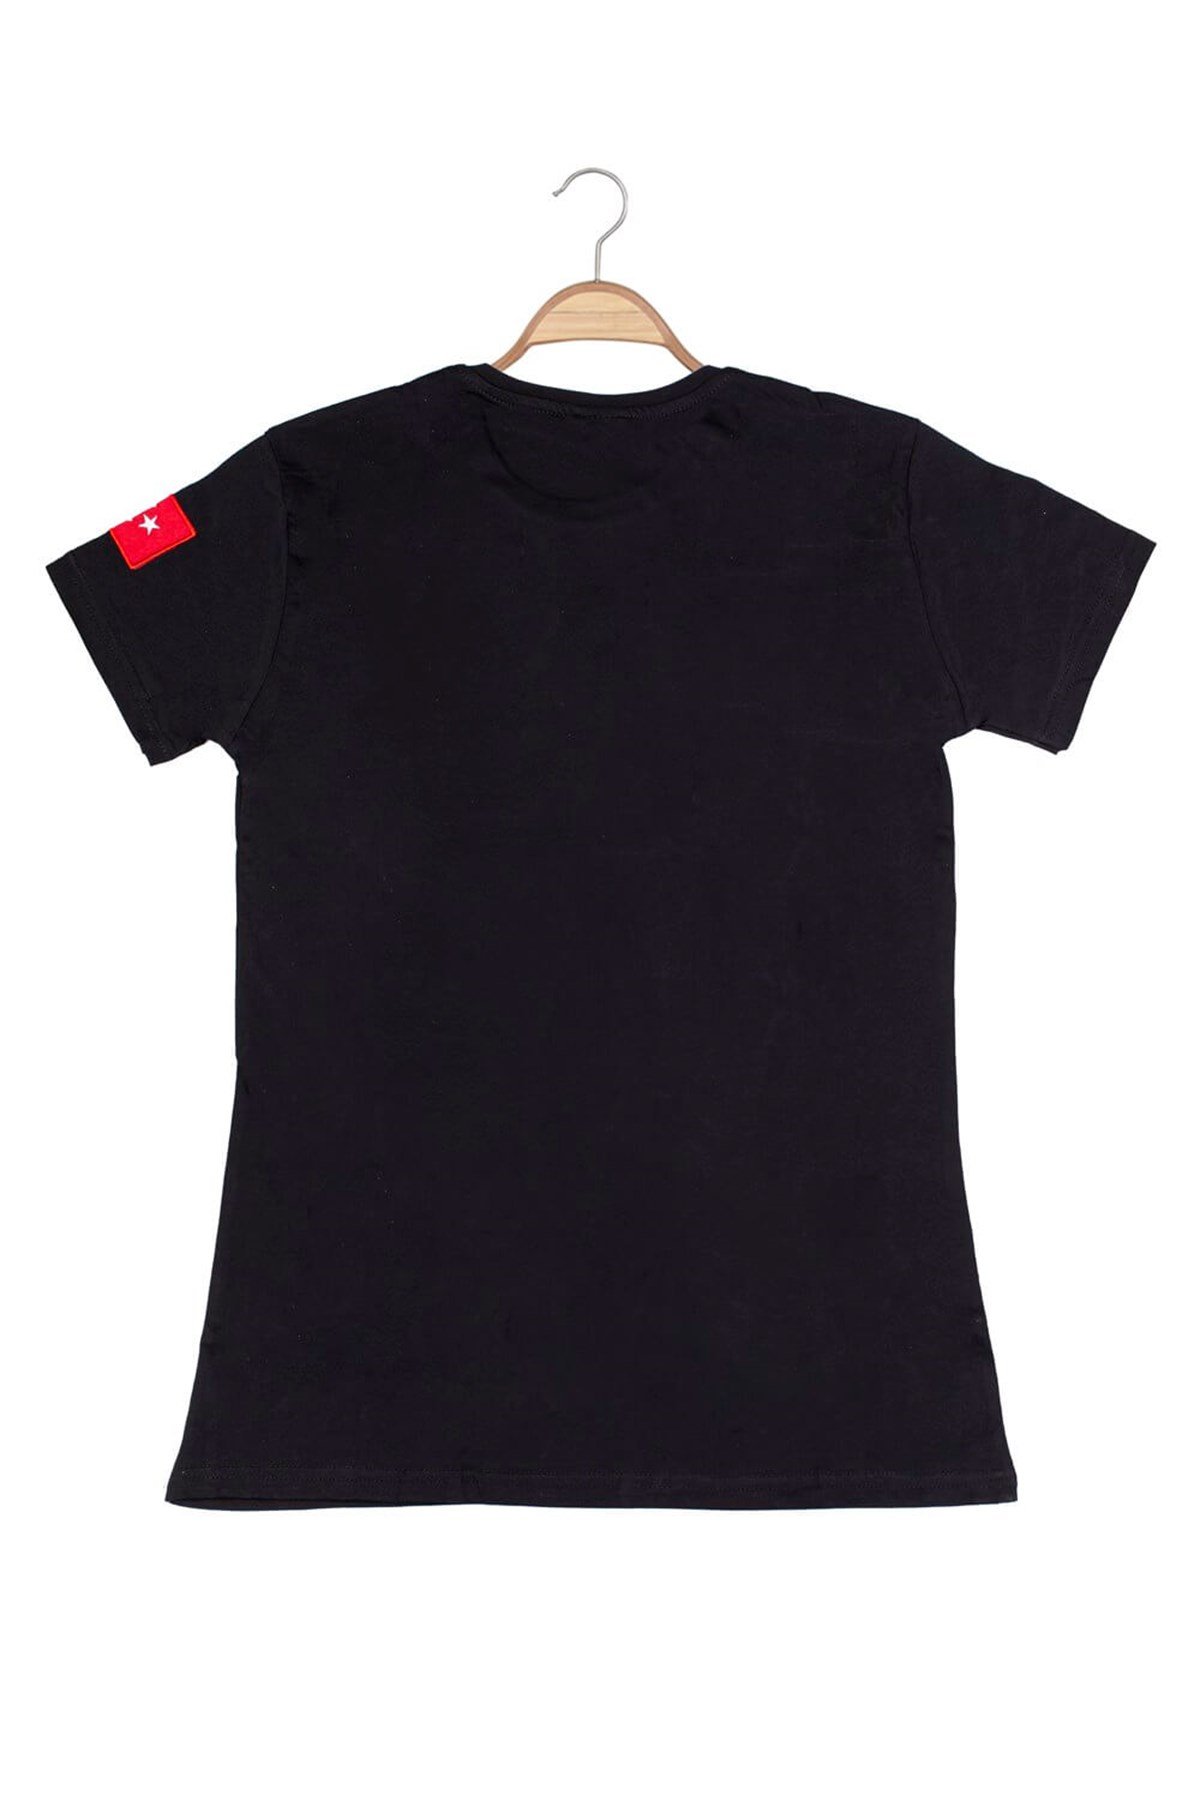 Unisex JÖH Baskılı Tshirt - Siyah